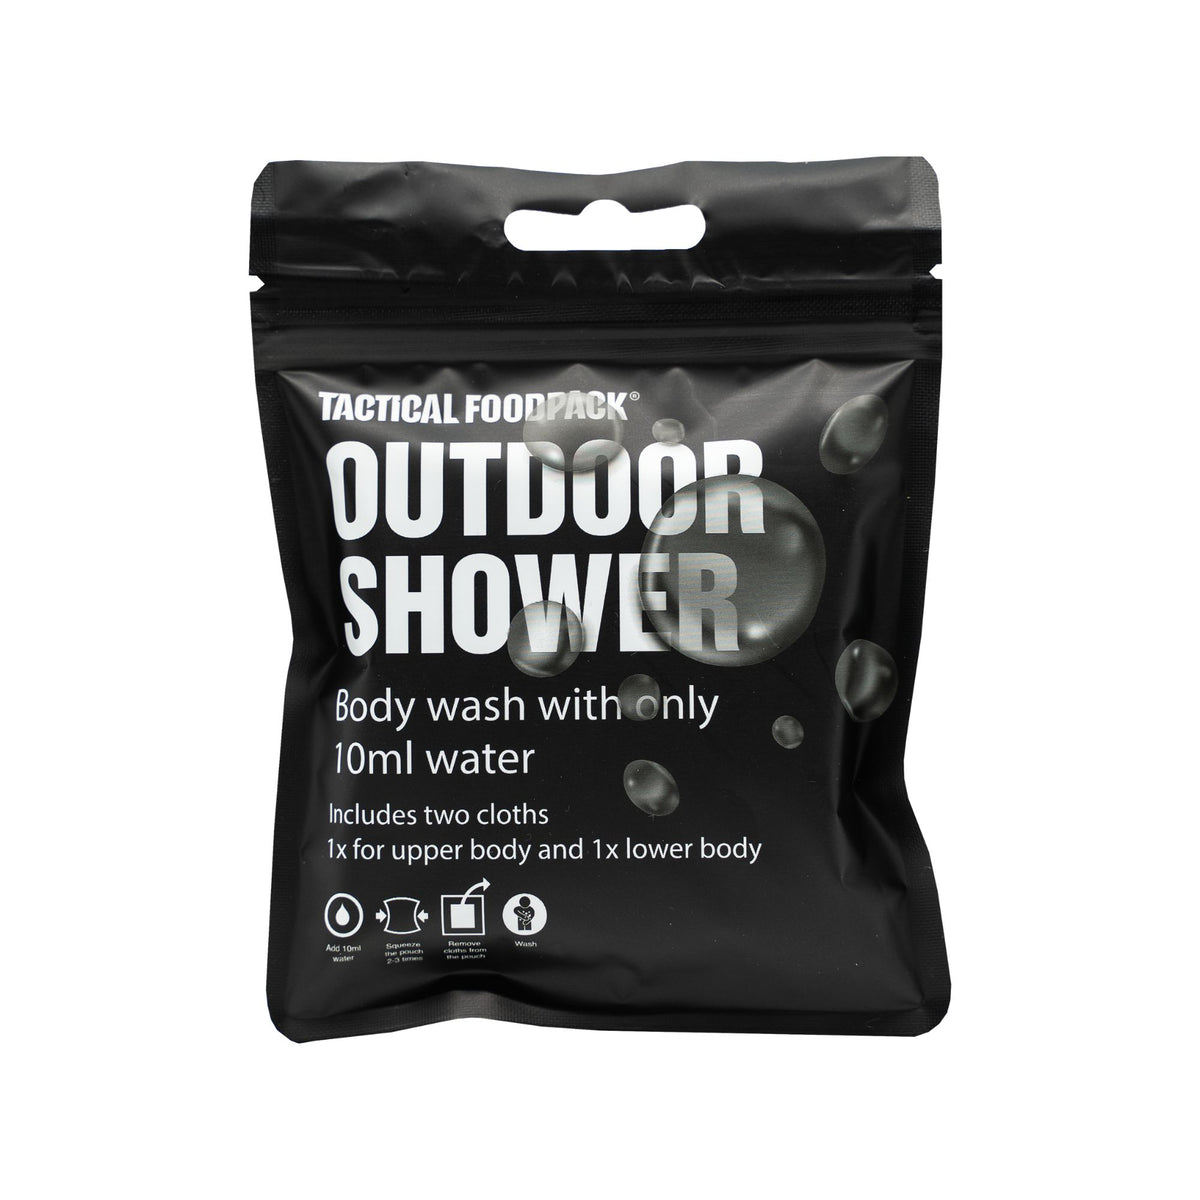 Tactical Foodpack | Outdoor Shower - Doccia outdoor